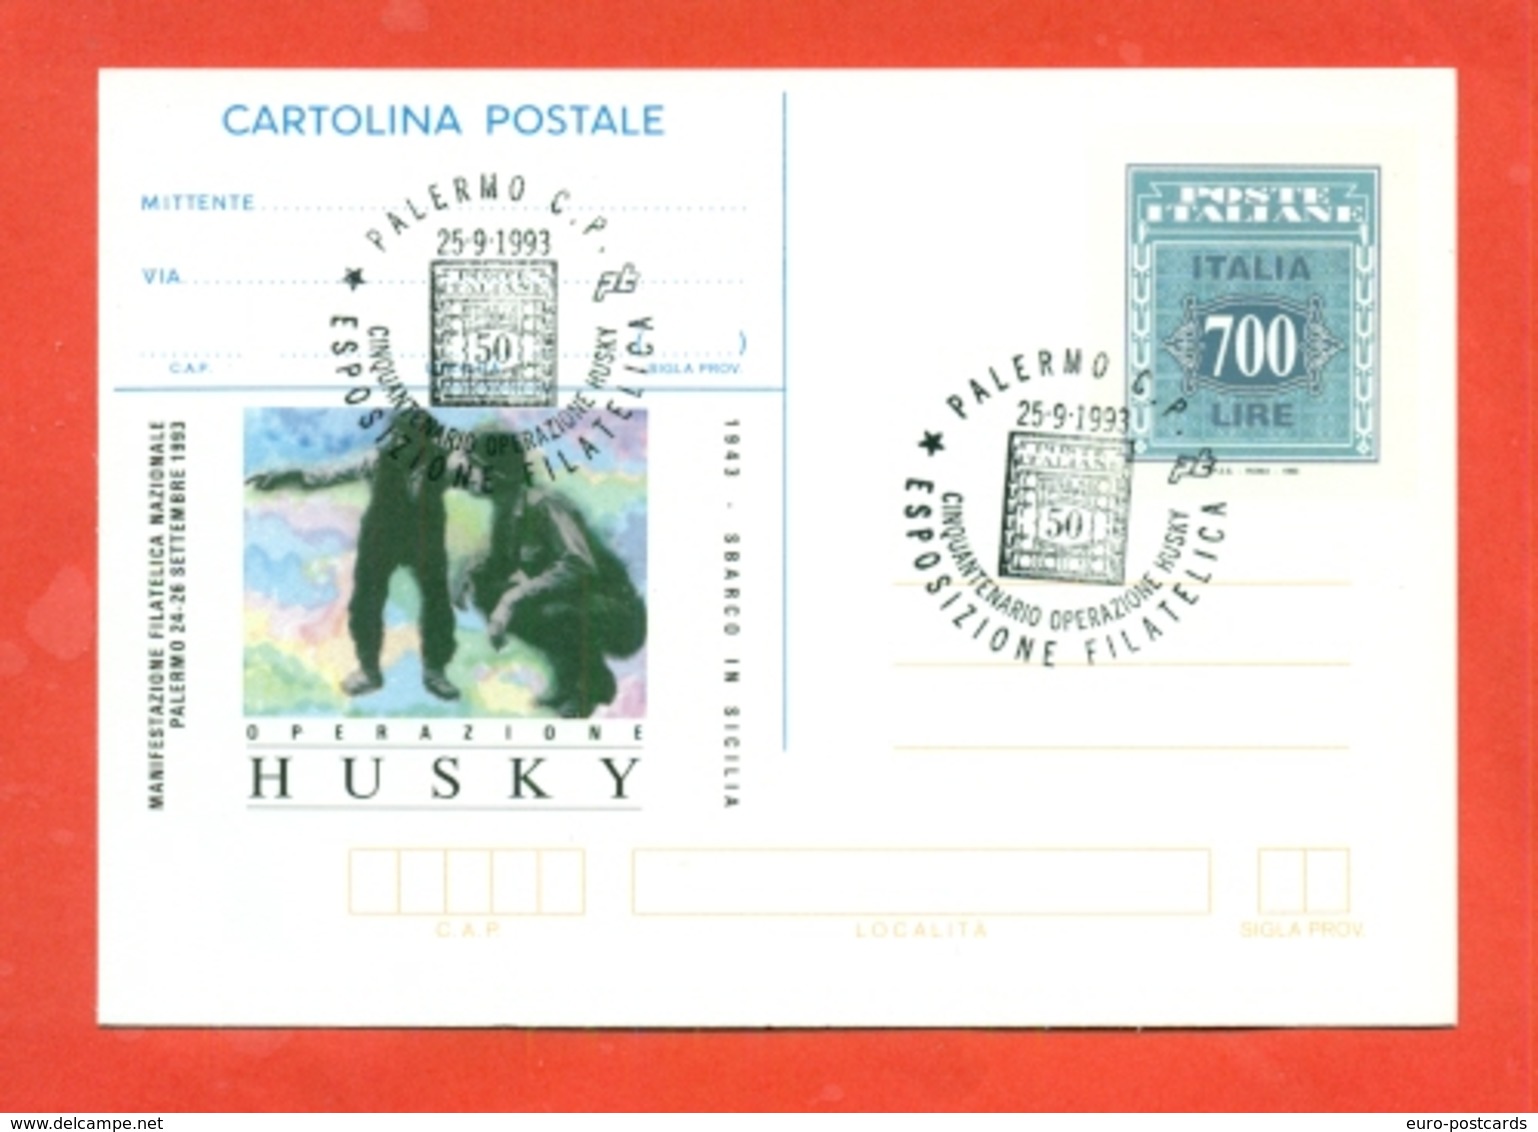 INTERI POSTALI- C 228 -FDC - ANNULLO PALERMO 25/9/1993 - Stamped Stationery